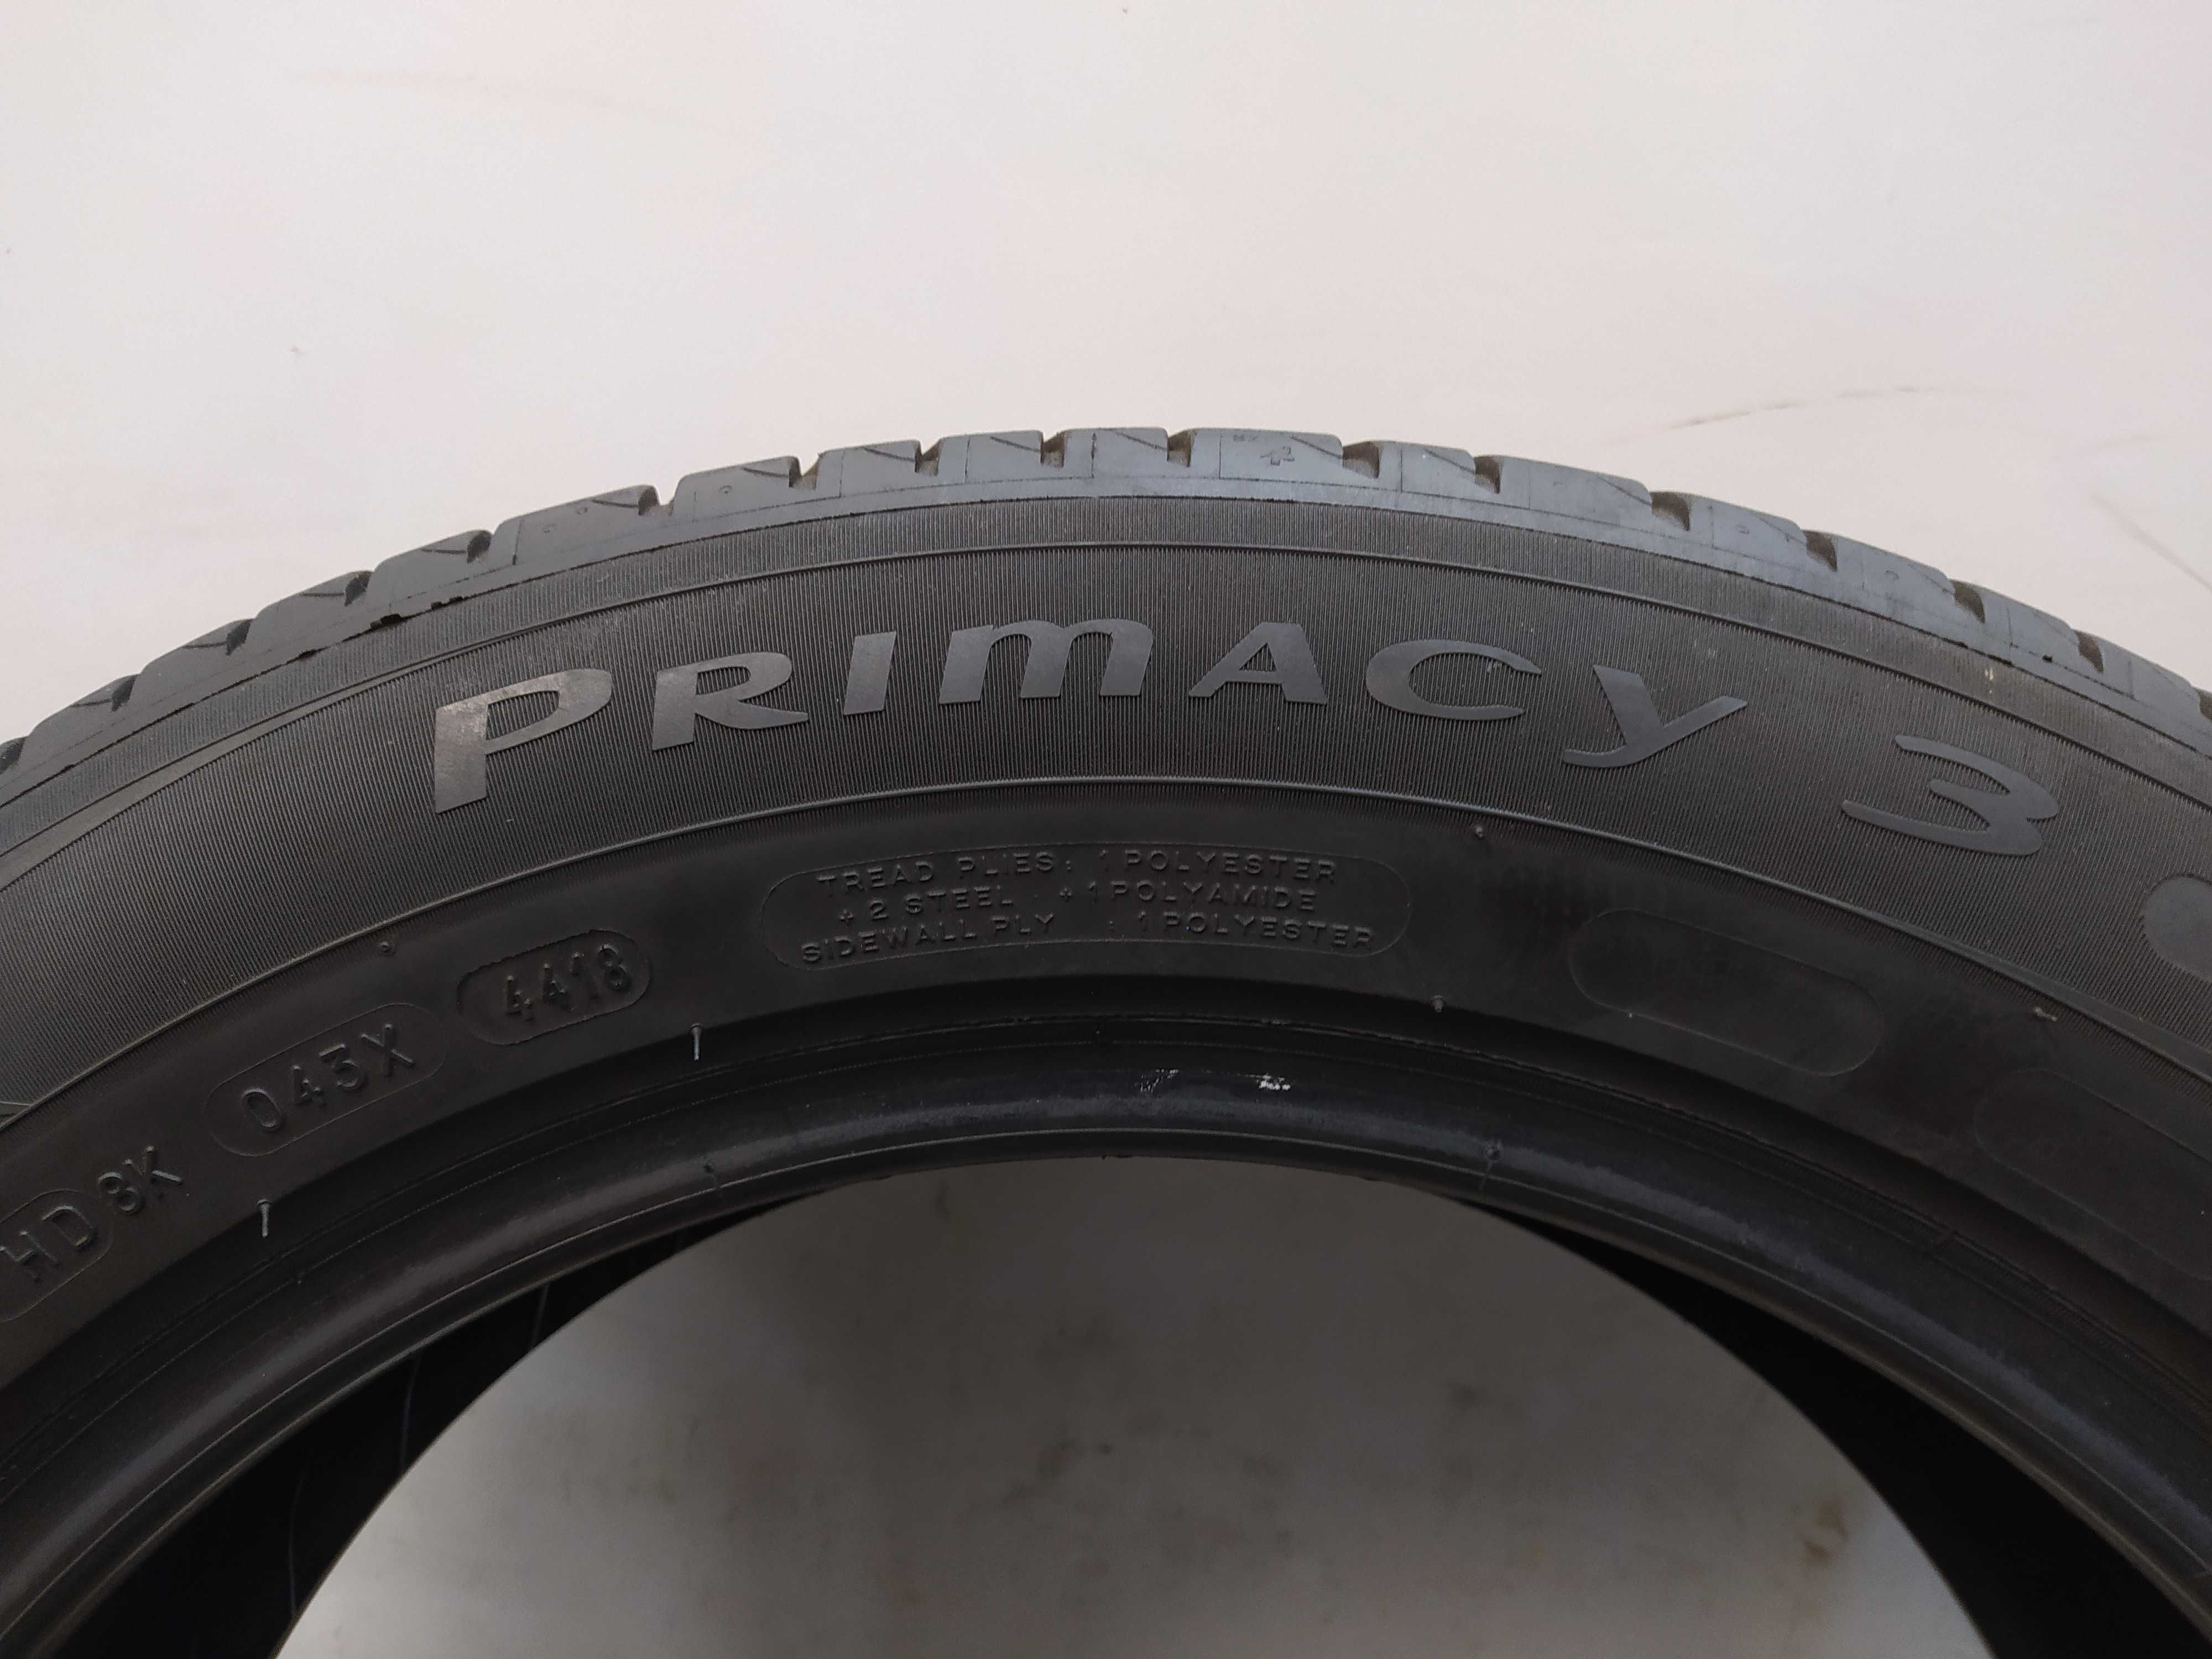 1x225/55R17 Michelin Primacy 3, 2018 rok, 101W XL, bieżnik 5mm